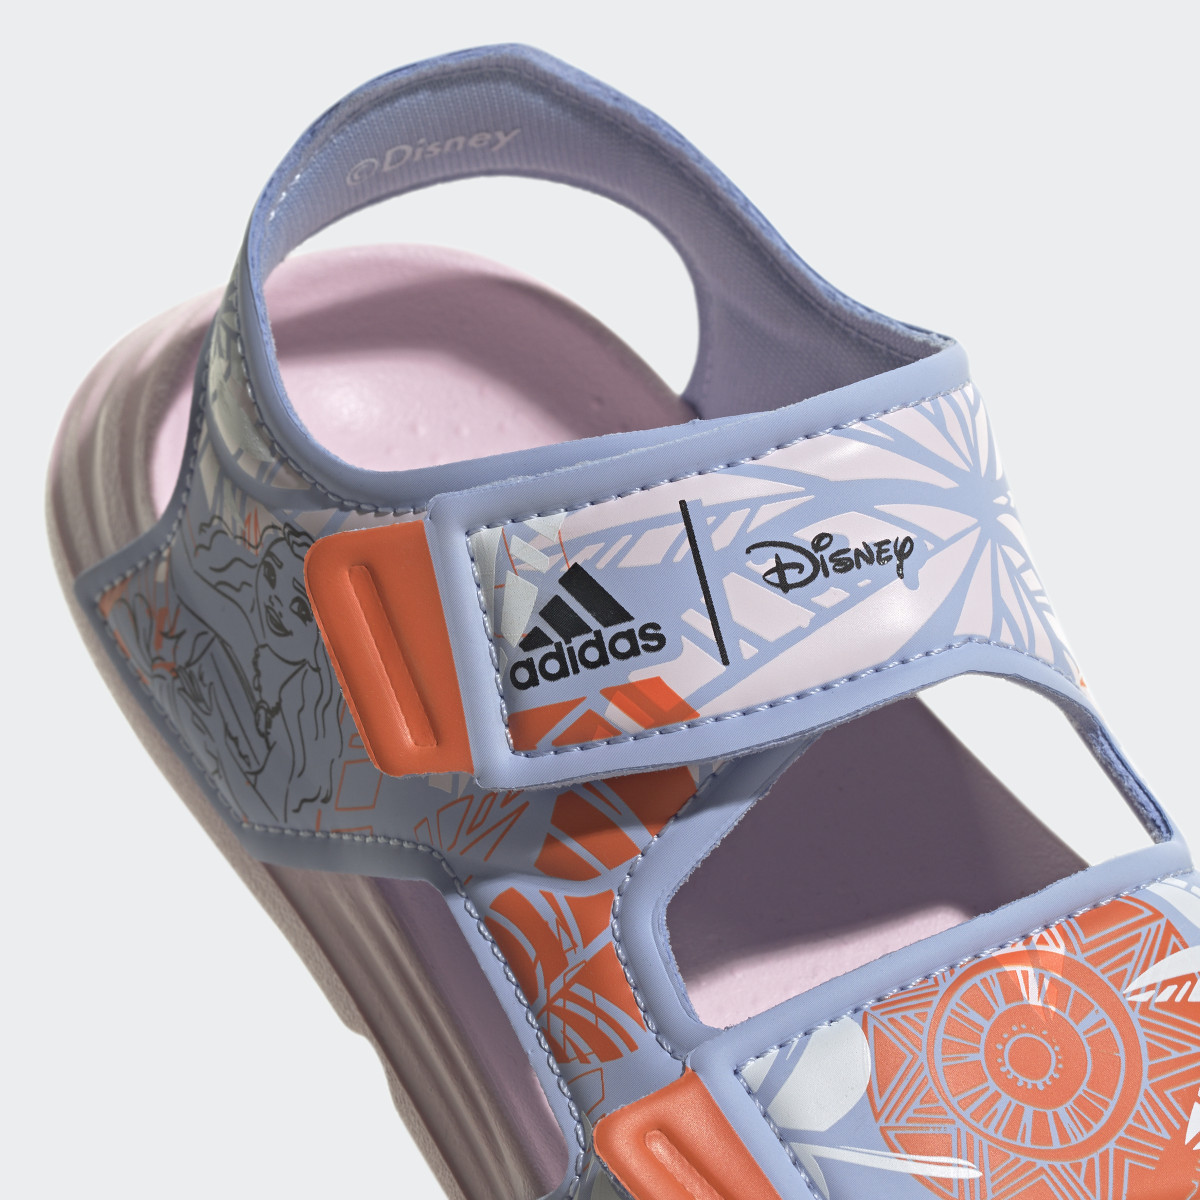 Adidas x Disney AltaSwim Moana Swim Sandals. 9